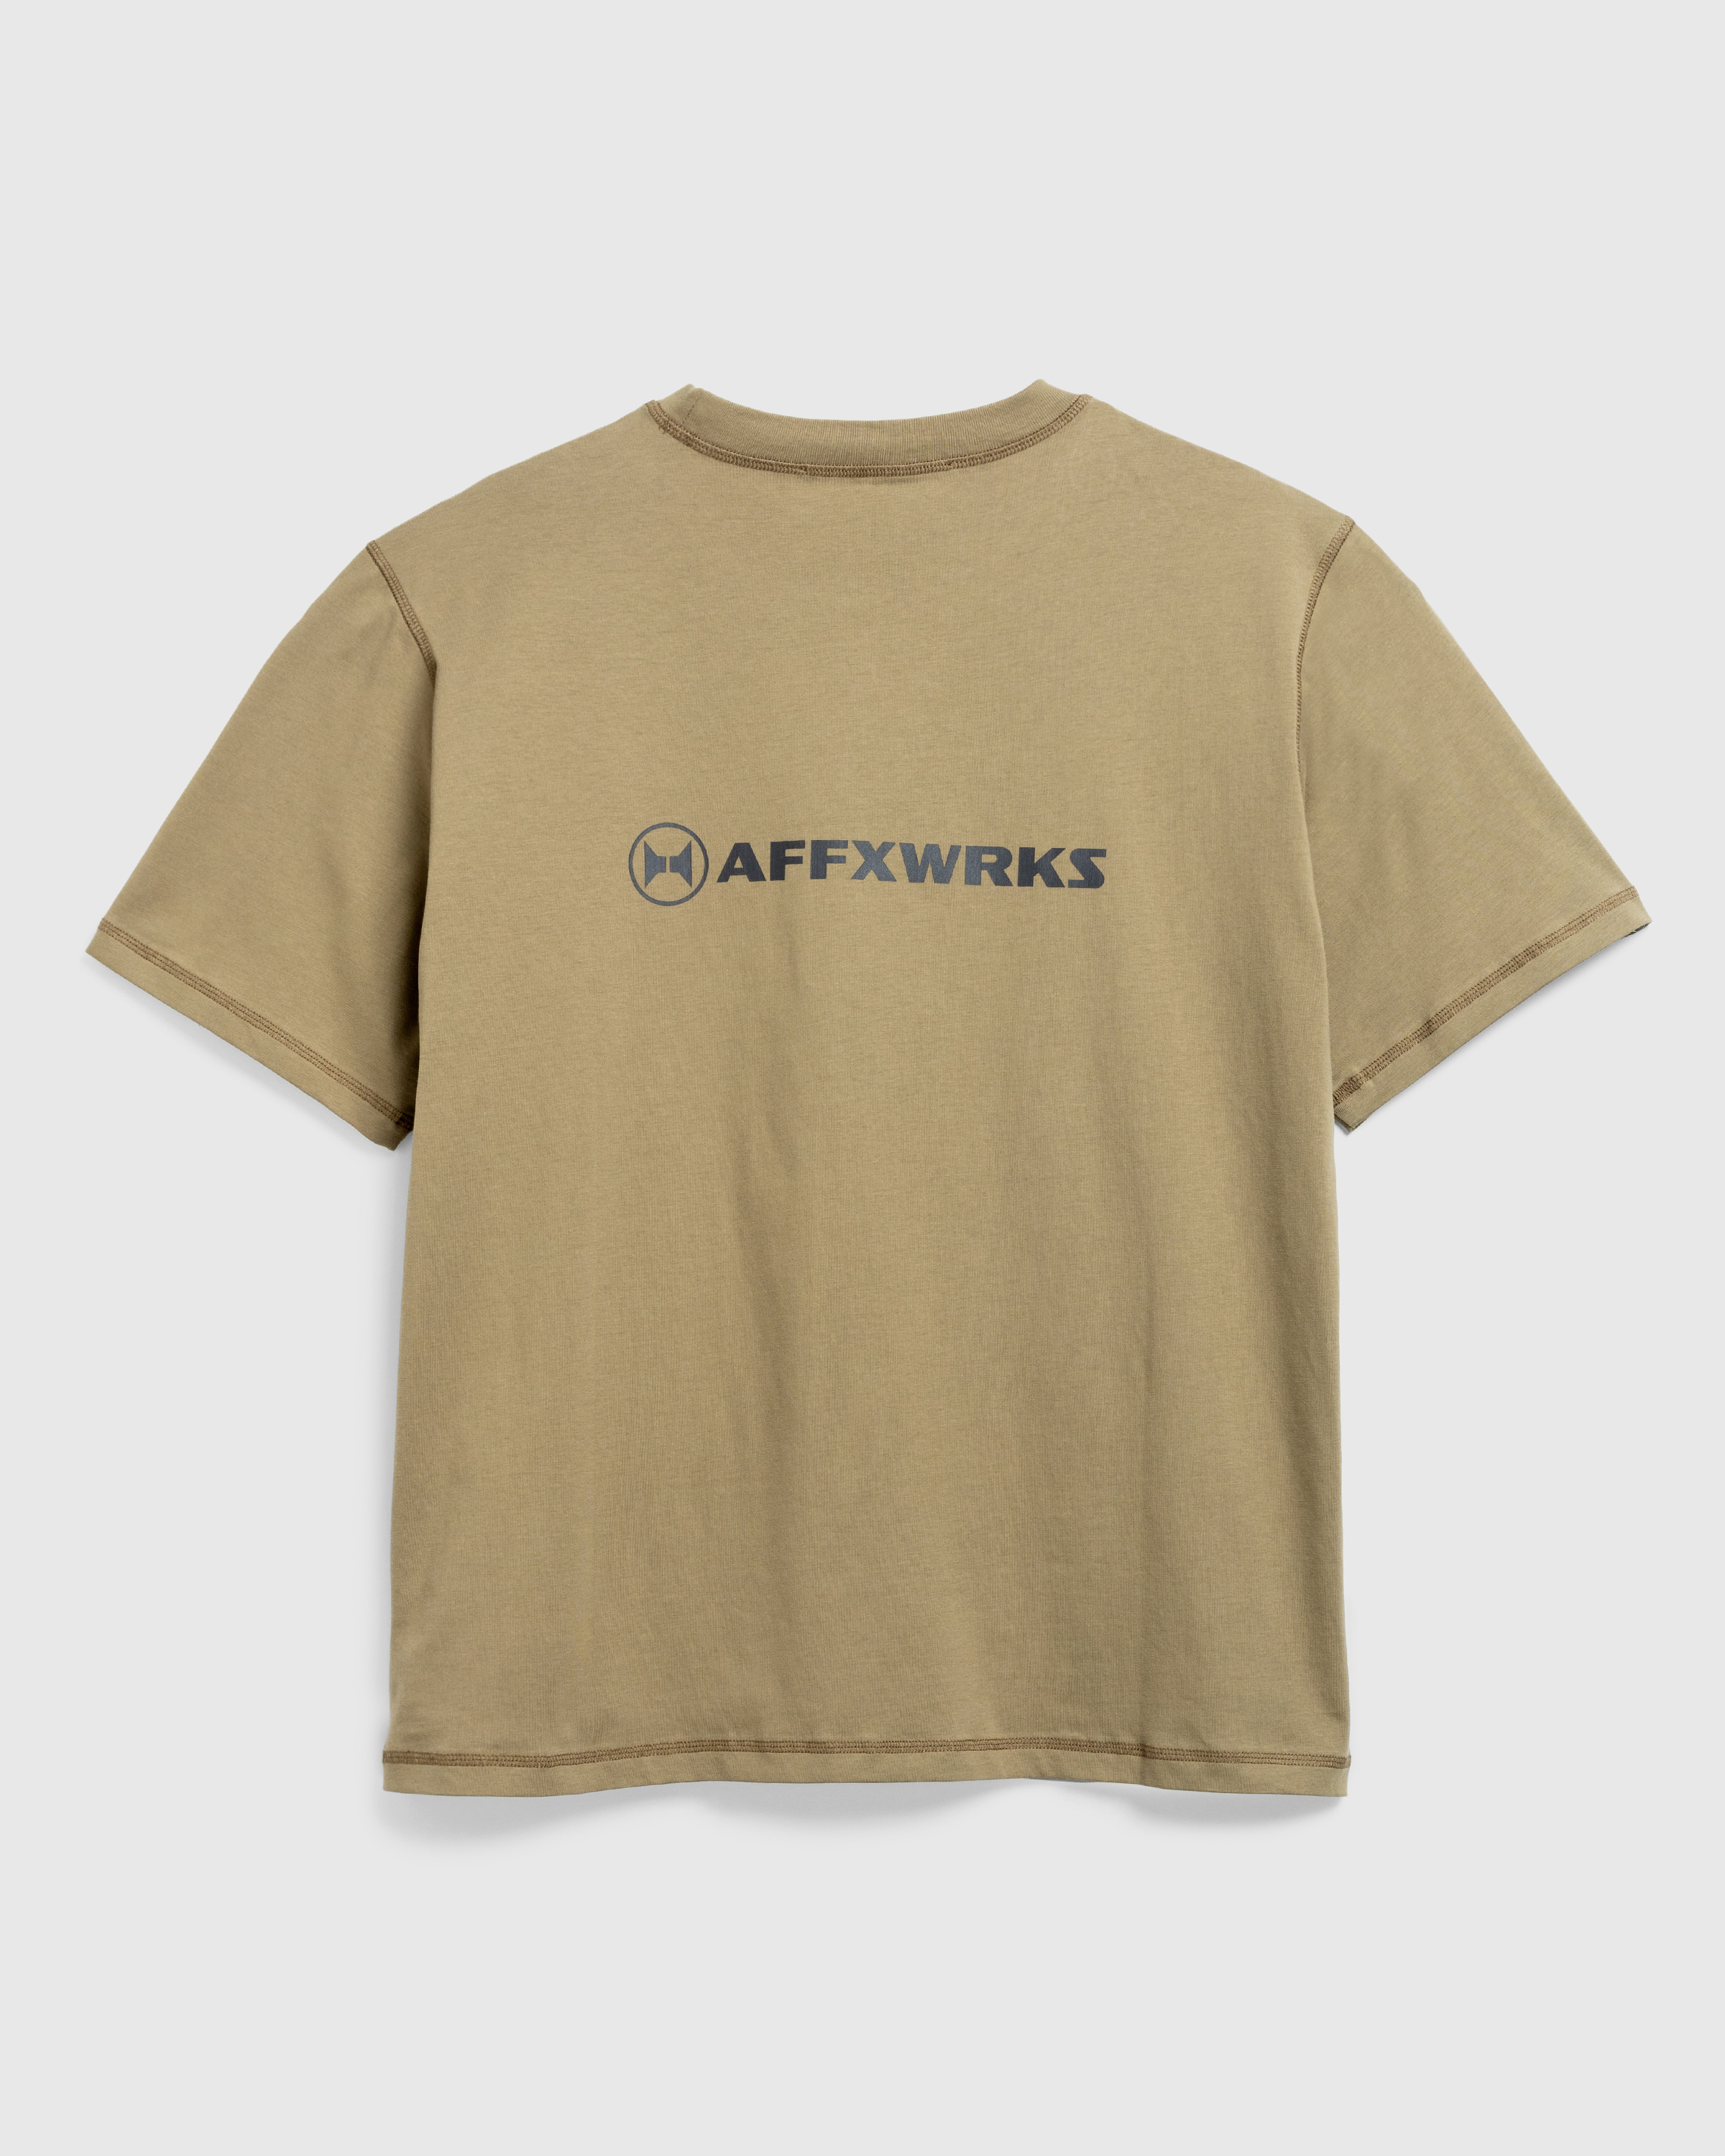 AFFXWRKS – AFFXWRKS T-Shirt Desert Green - T-Shirts - Green - Image 1